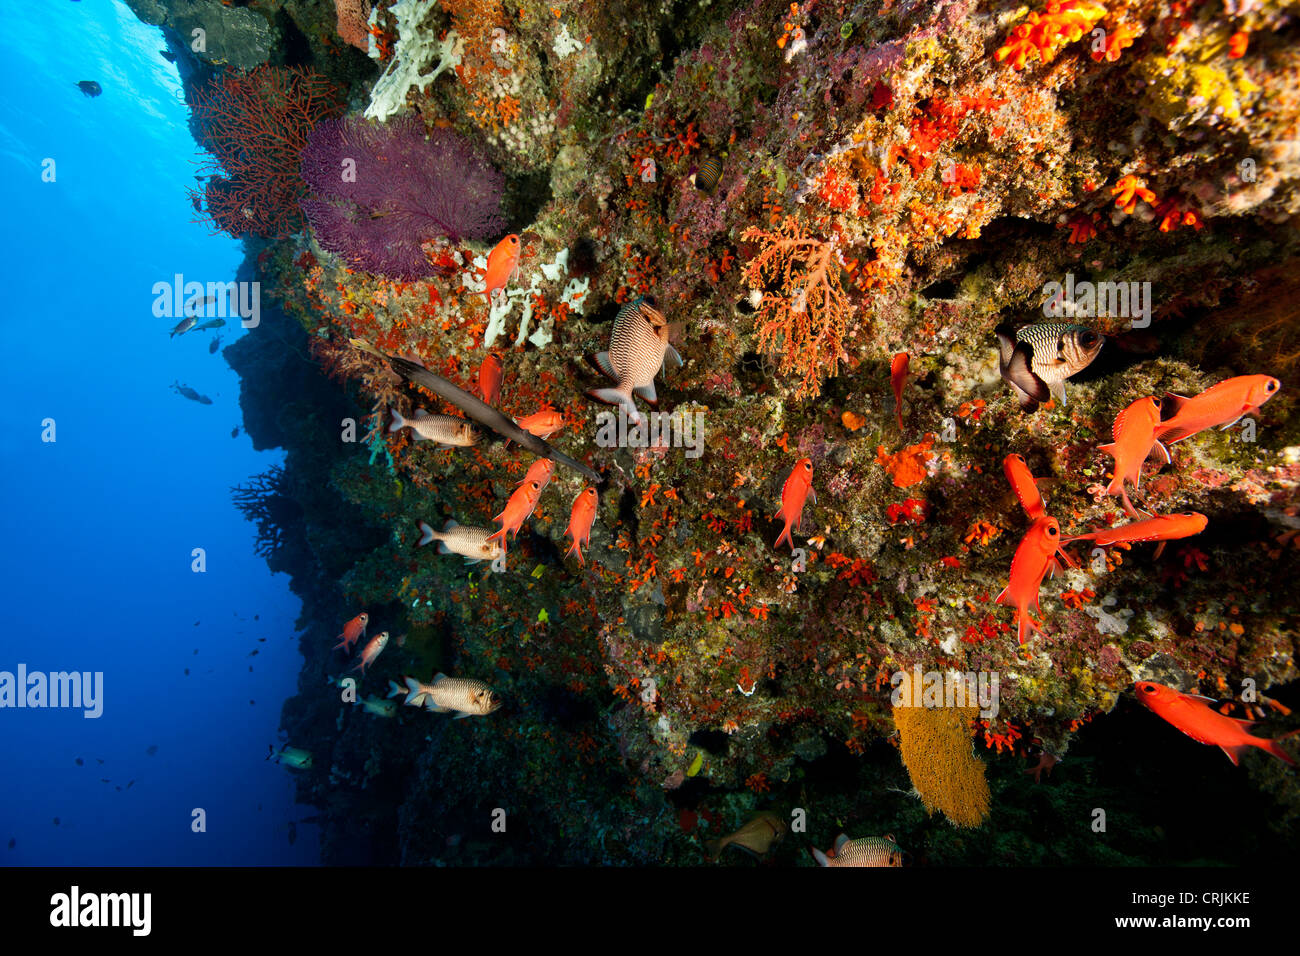 Korallen, Schwämme und mehrere Arten von tropischen Fischen an der Wand vor den Inseln von Palau in Mikronesien. Stockfoto